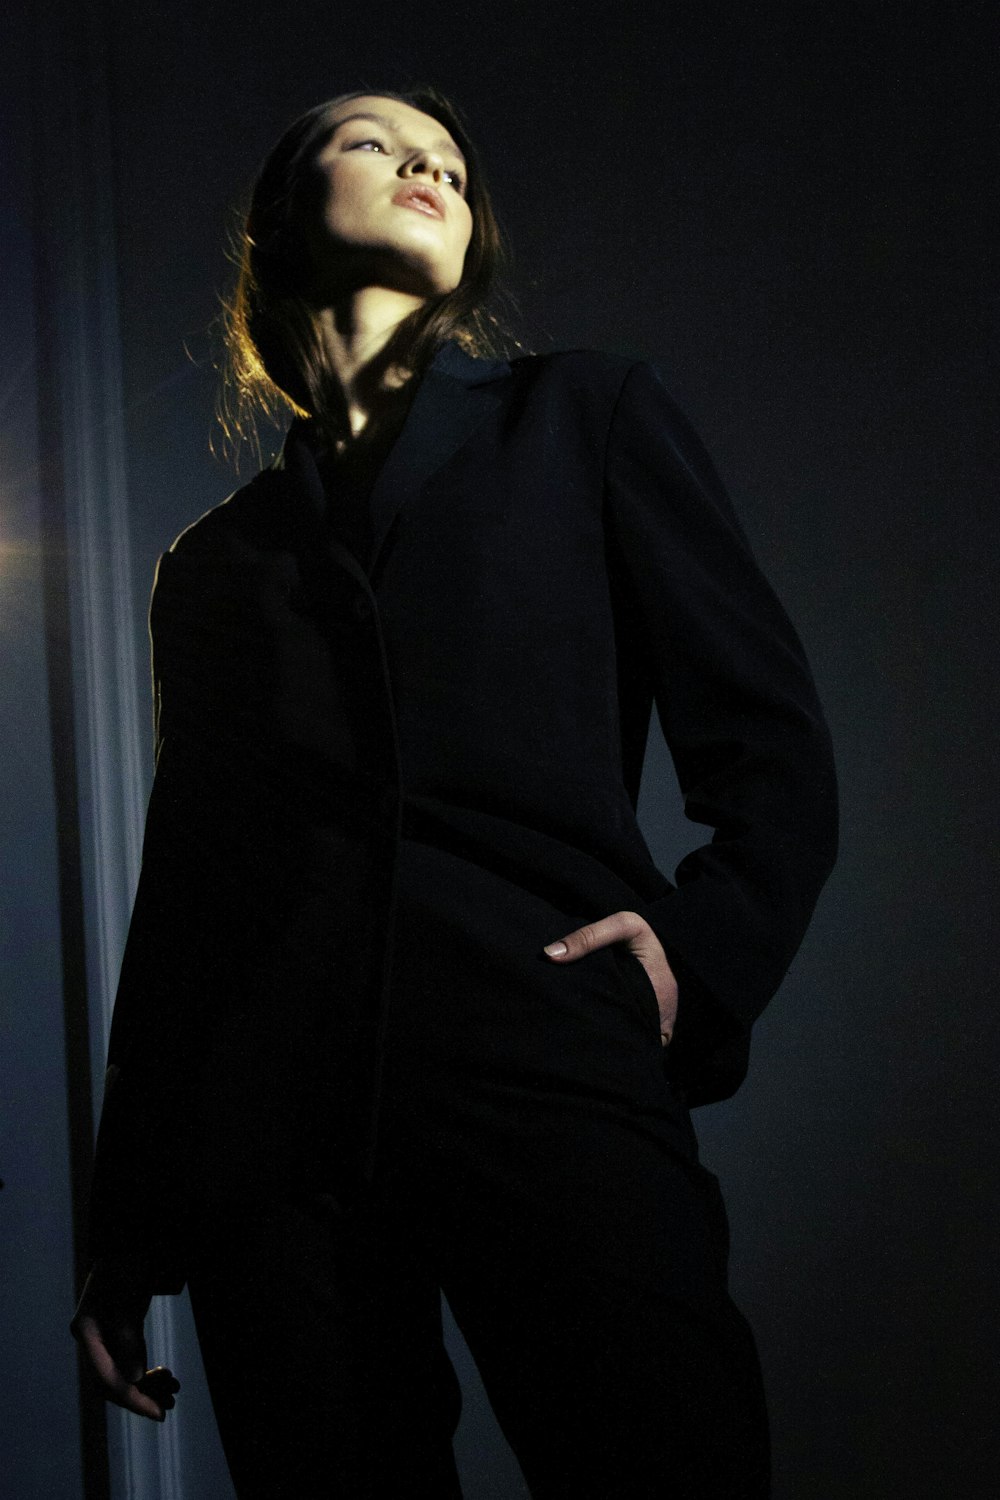 Una mujer parada en una habitación oscura con los ojos cerrados